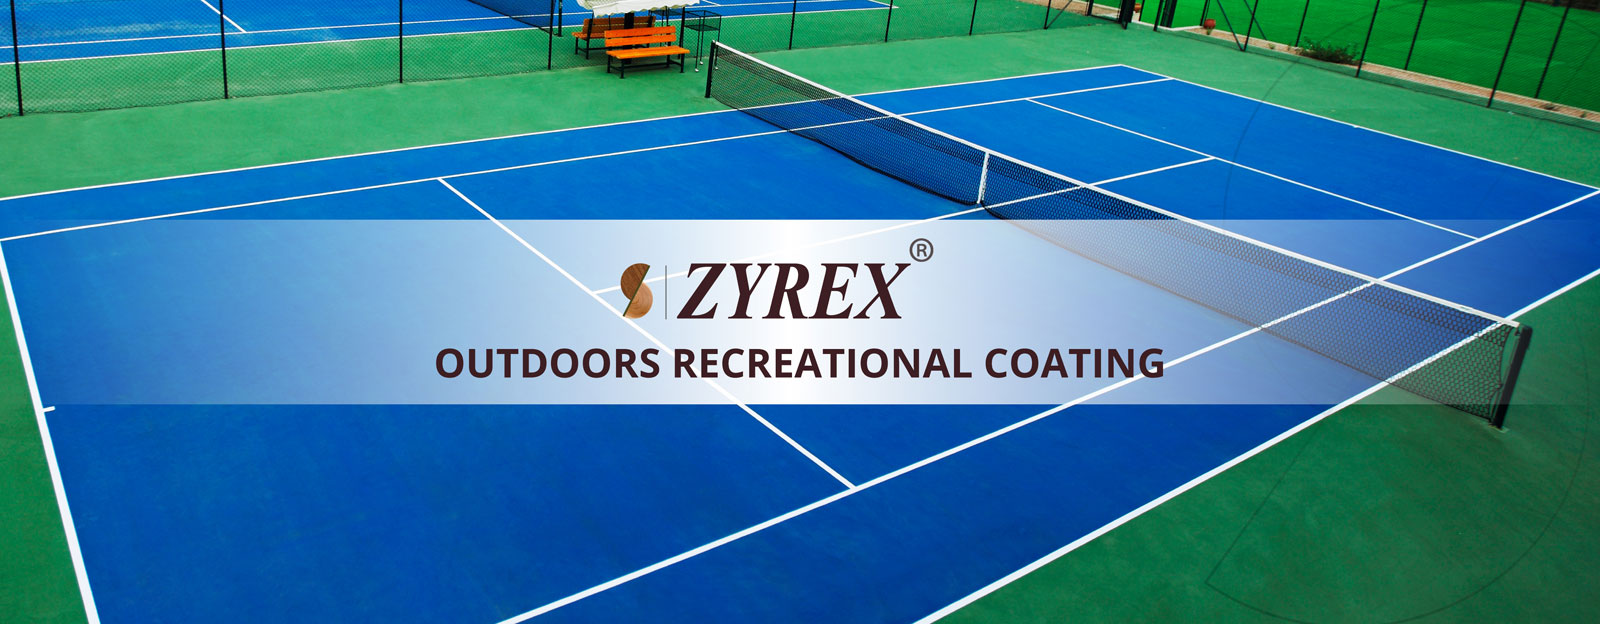 Zyrex - Outdoor Recreational Coating